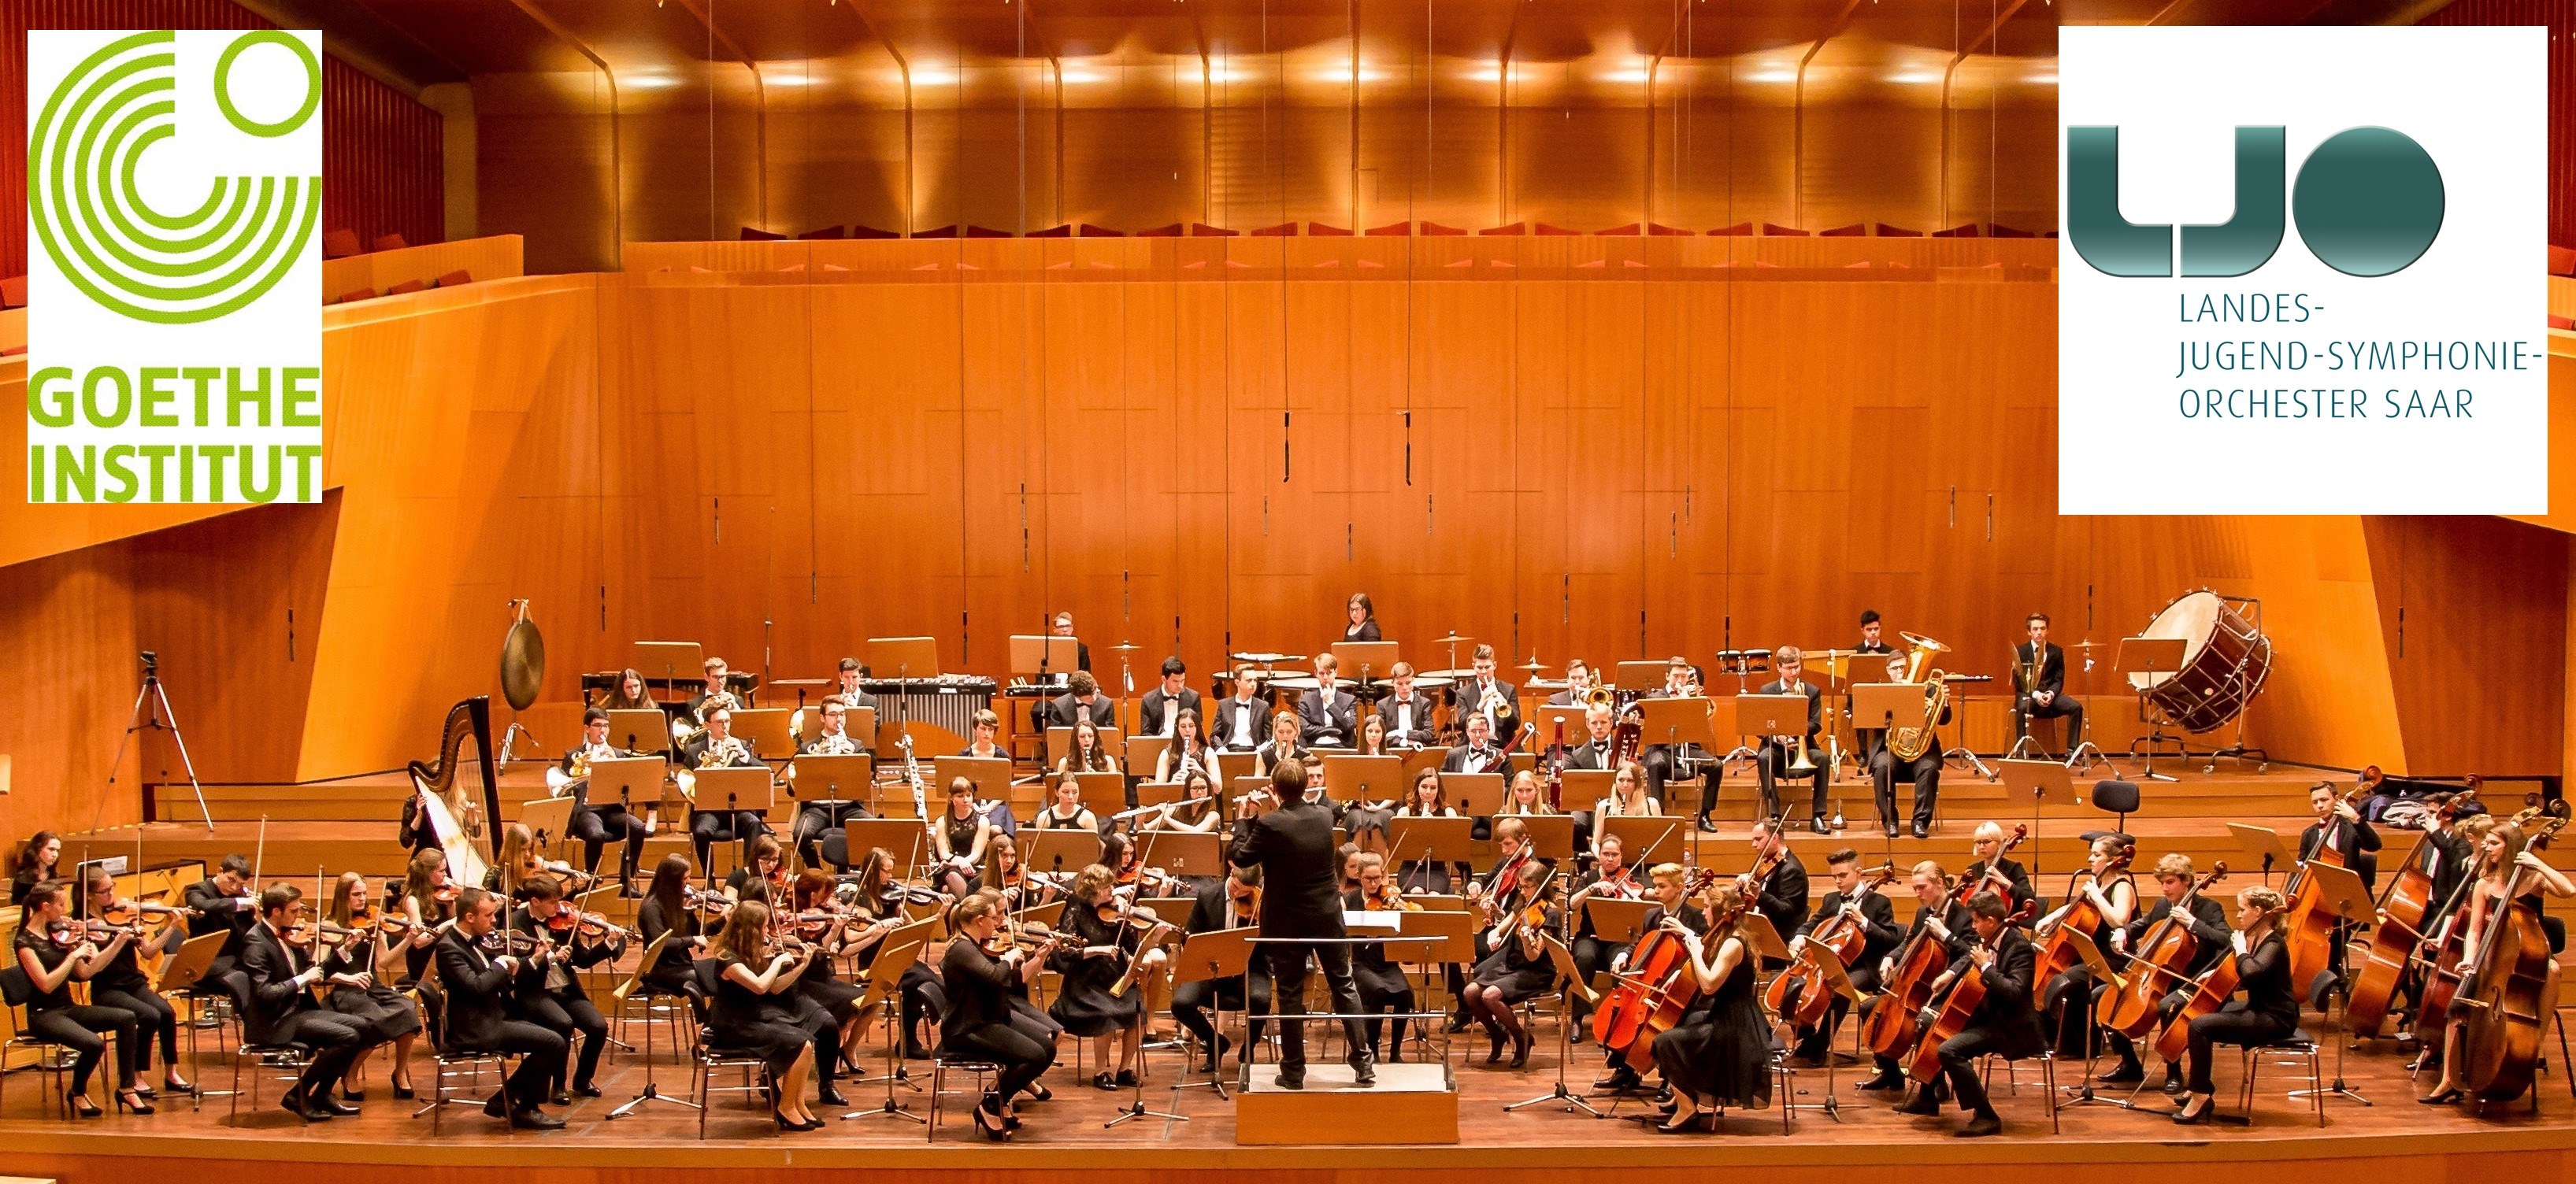 Landes-Jugend-Symphonie-Orchester Saar's concert